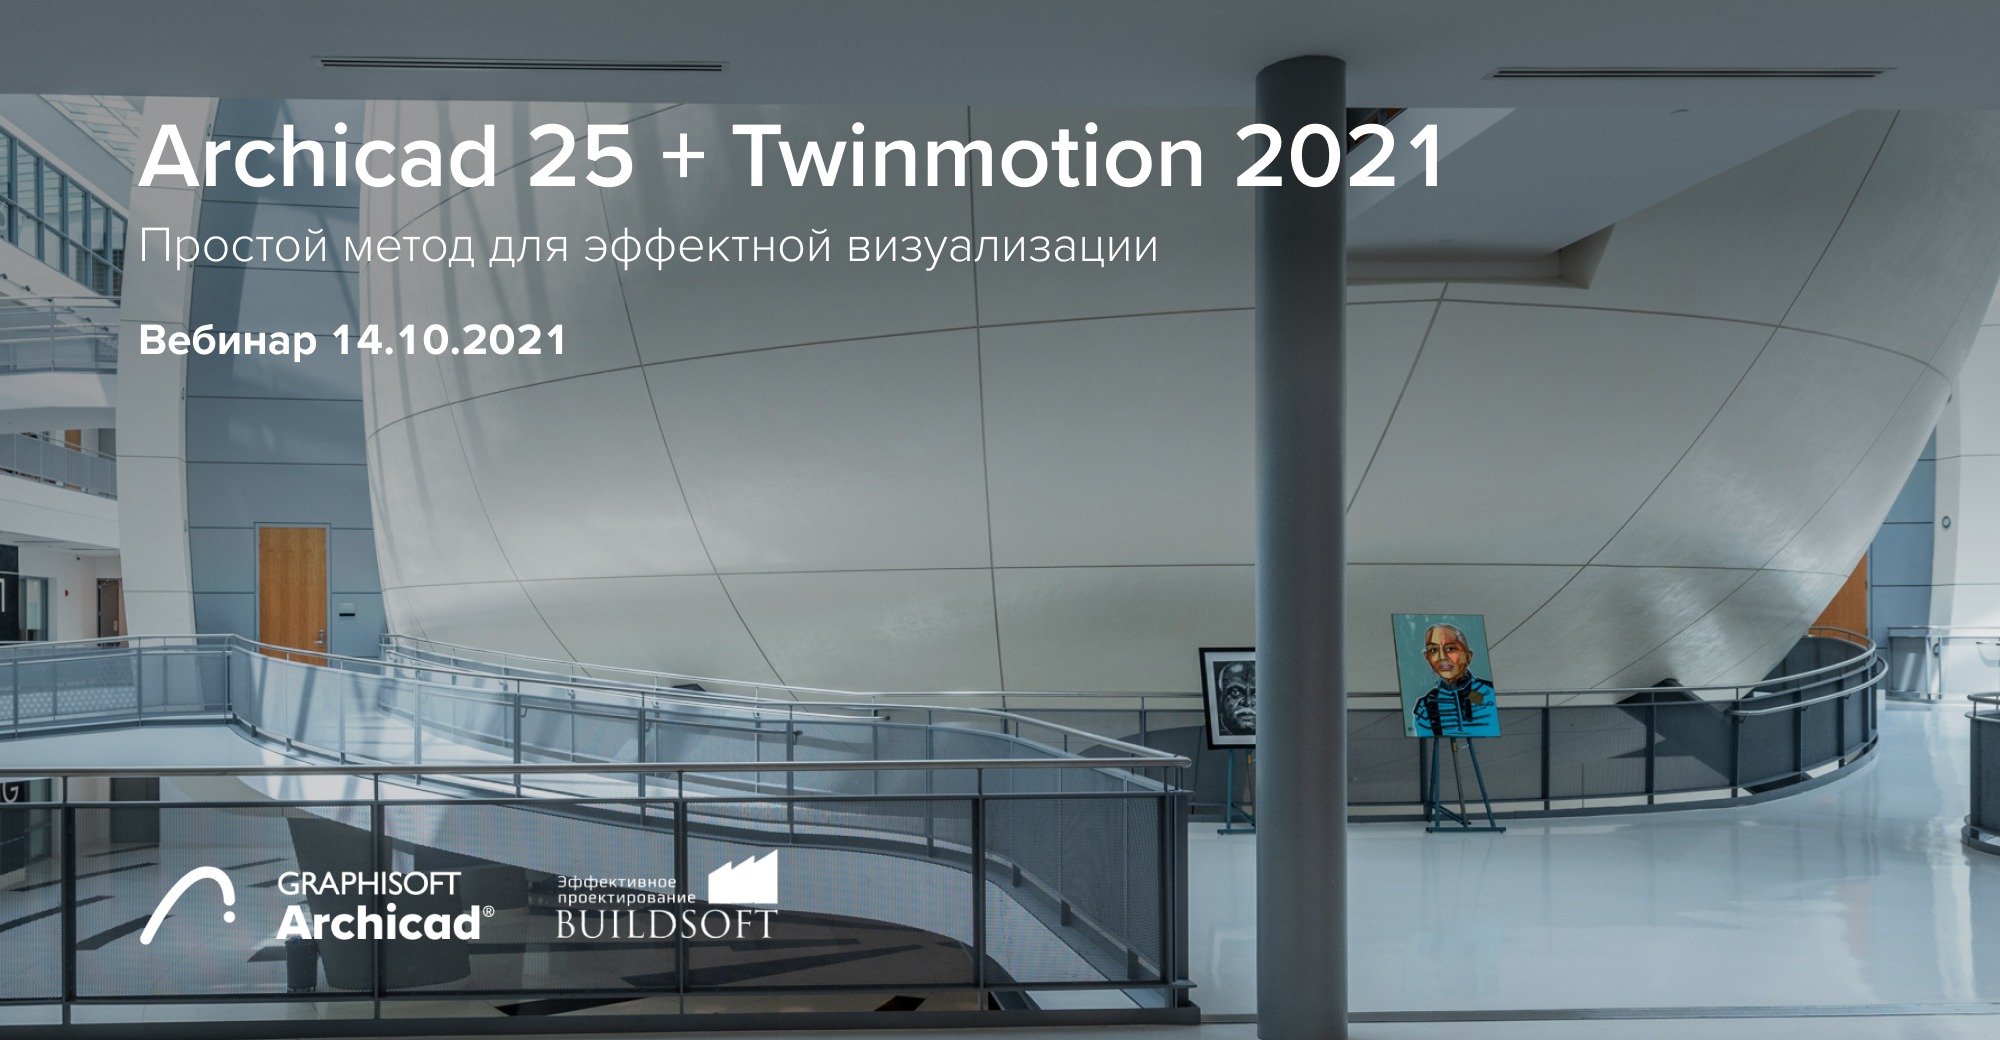 Вебинар: Archicad 25 + Twinmotion 2021 — Простой метод для эффектной визуализации